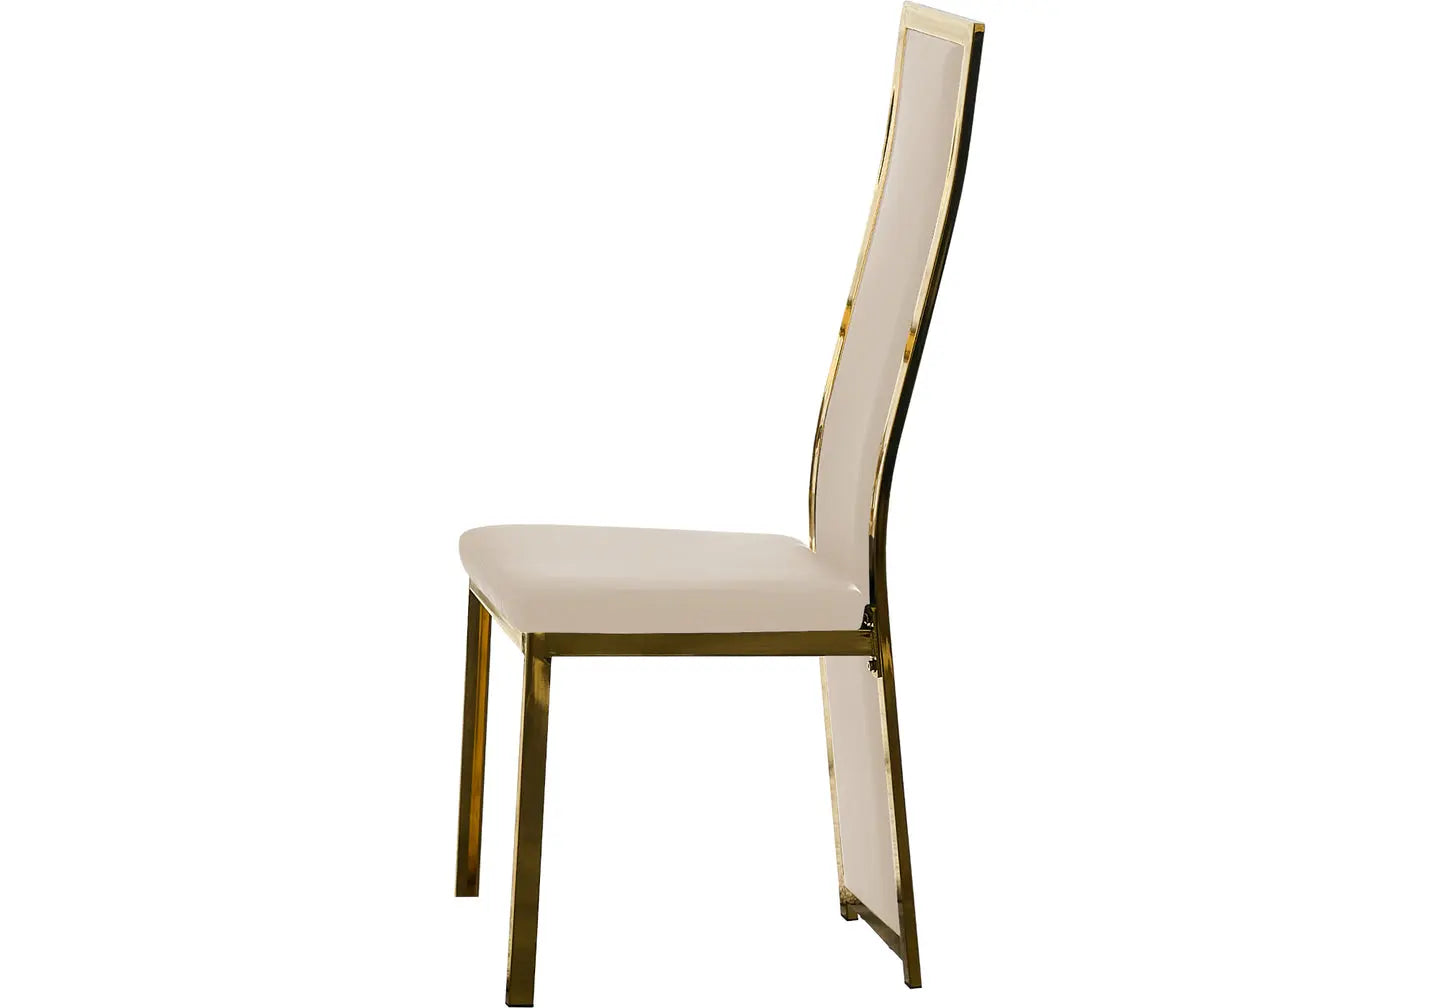 Table et chaise dorée beige marbre blanc DIA New Design